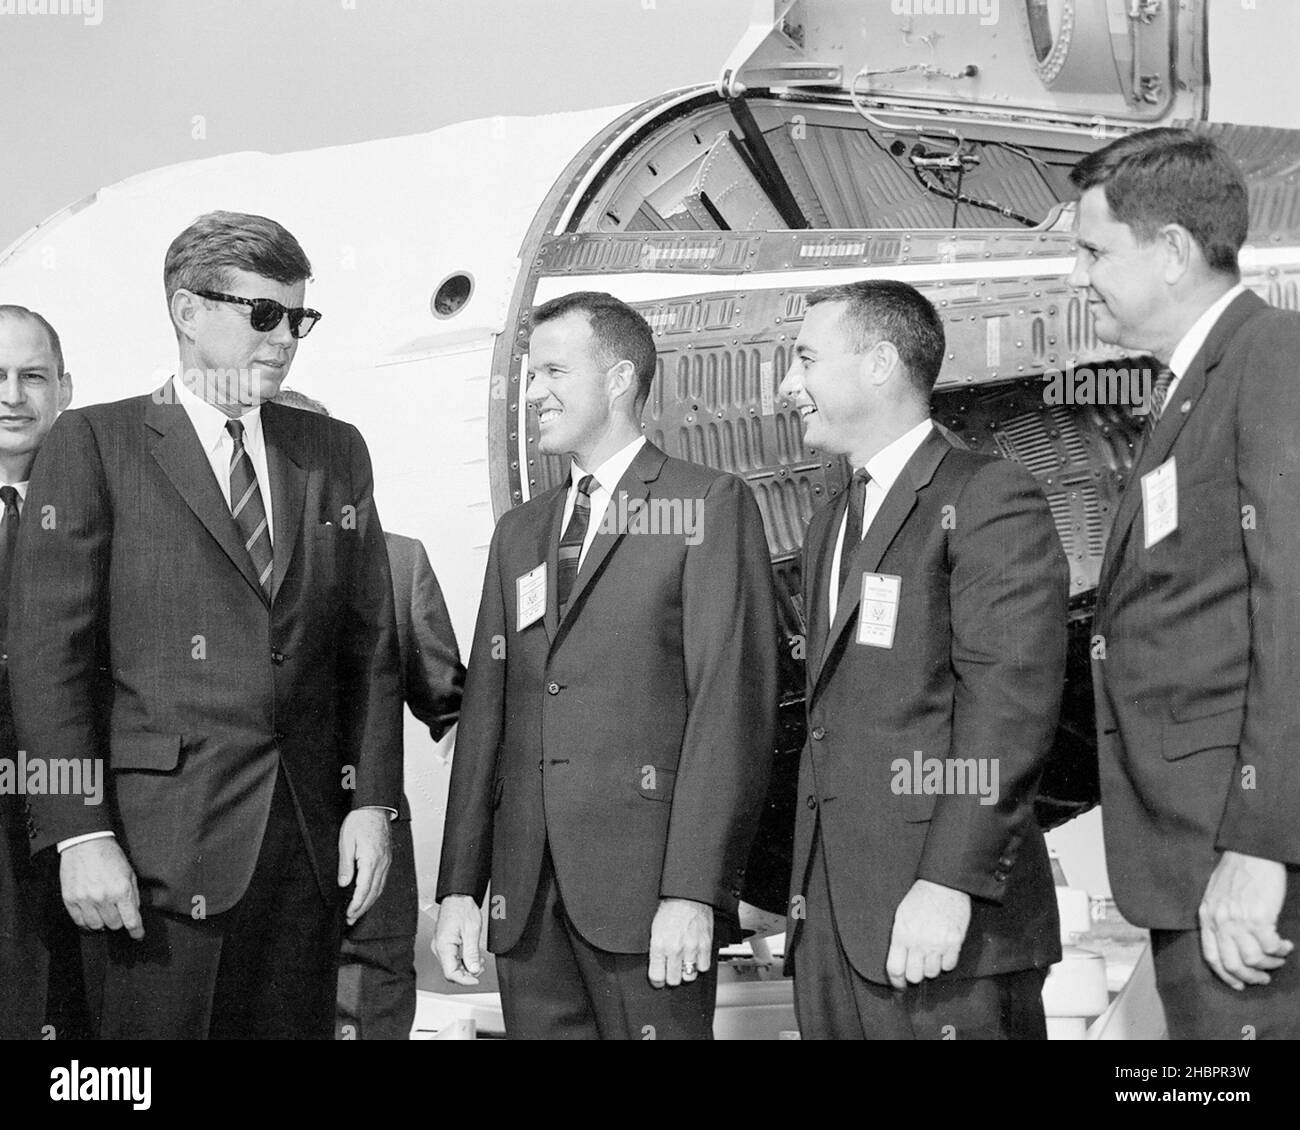 CAPE CANAVERAL Flat. -- il presidente John F. Kennedy visita l'allegato del test missilistico di Cape Canaveral in Florida. Di fronte ad una navicella spaziale Gemini, da sinistra, si trovano George M. Low, capo della NASA del volo spaziale presidiato parzialmente visibile, Kennedy, l'astronauta L. Gordon Cooper, l'astronauta Virgil I. Grissom e G. Merritt Preston, il responsabile della NASA della gamma missilistica atlantica. Foto Stock